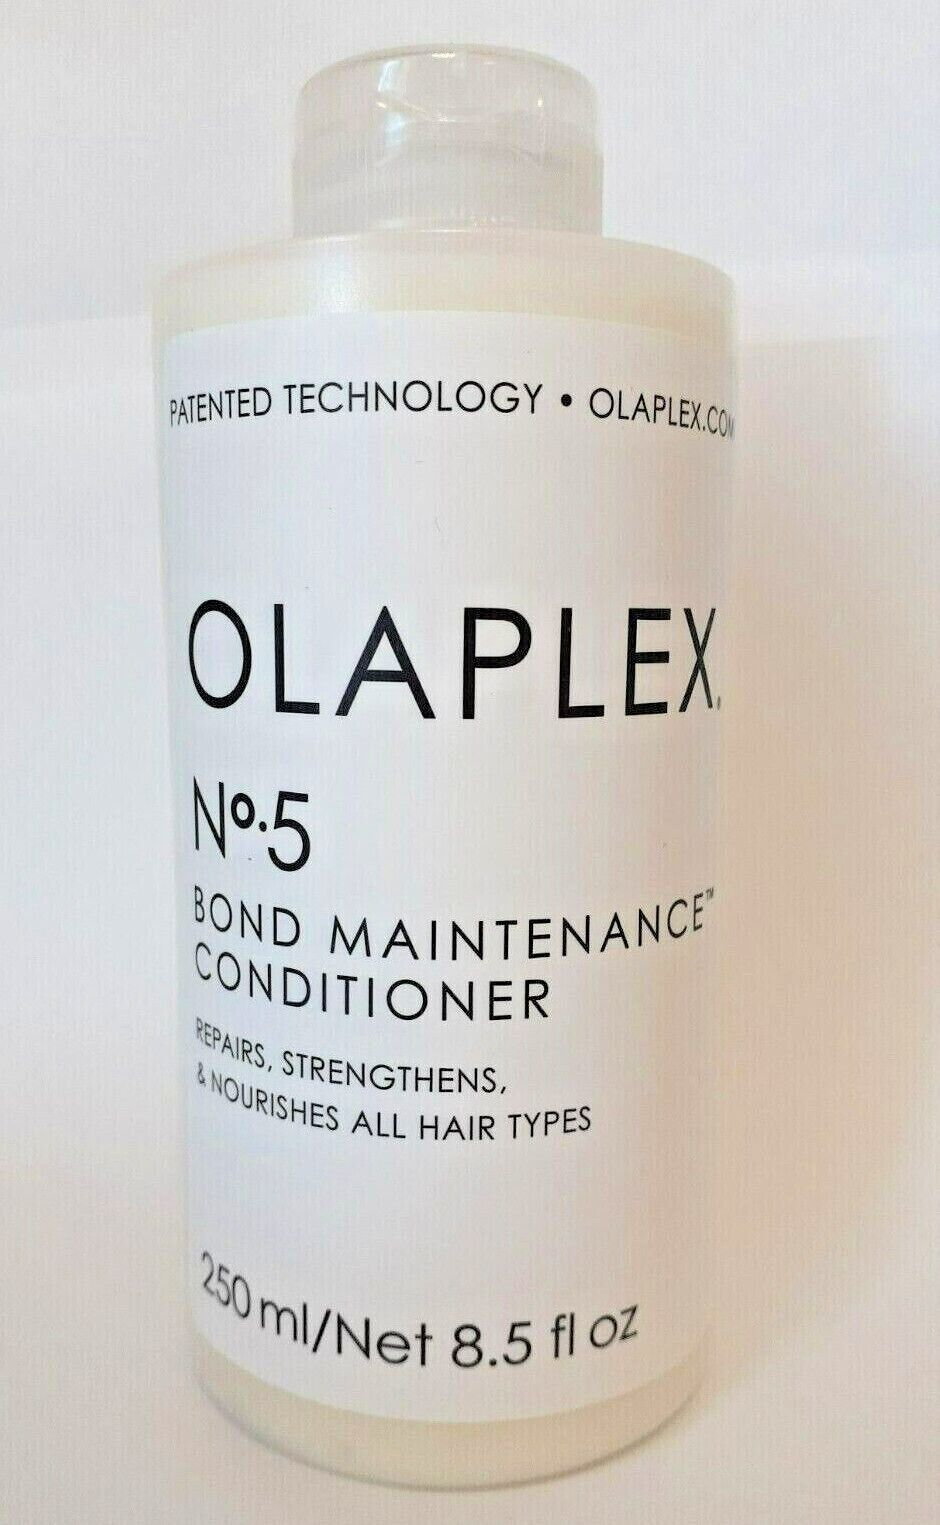 Olaplex No 4 and No.5 Bonde Maintenance Conditoner / Shampoo